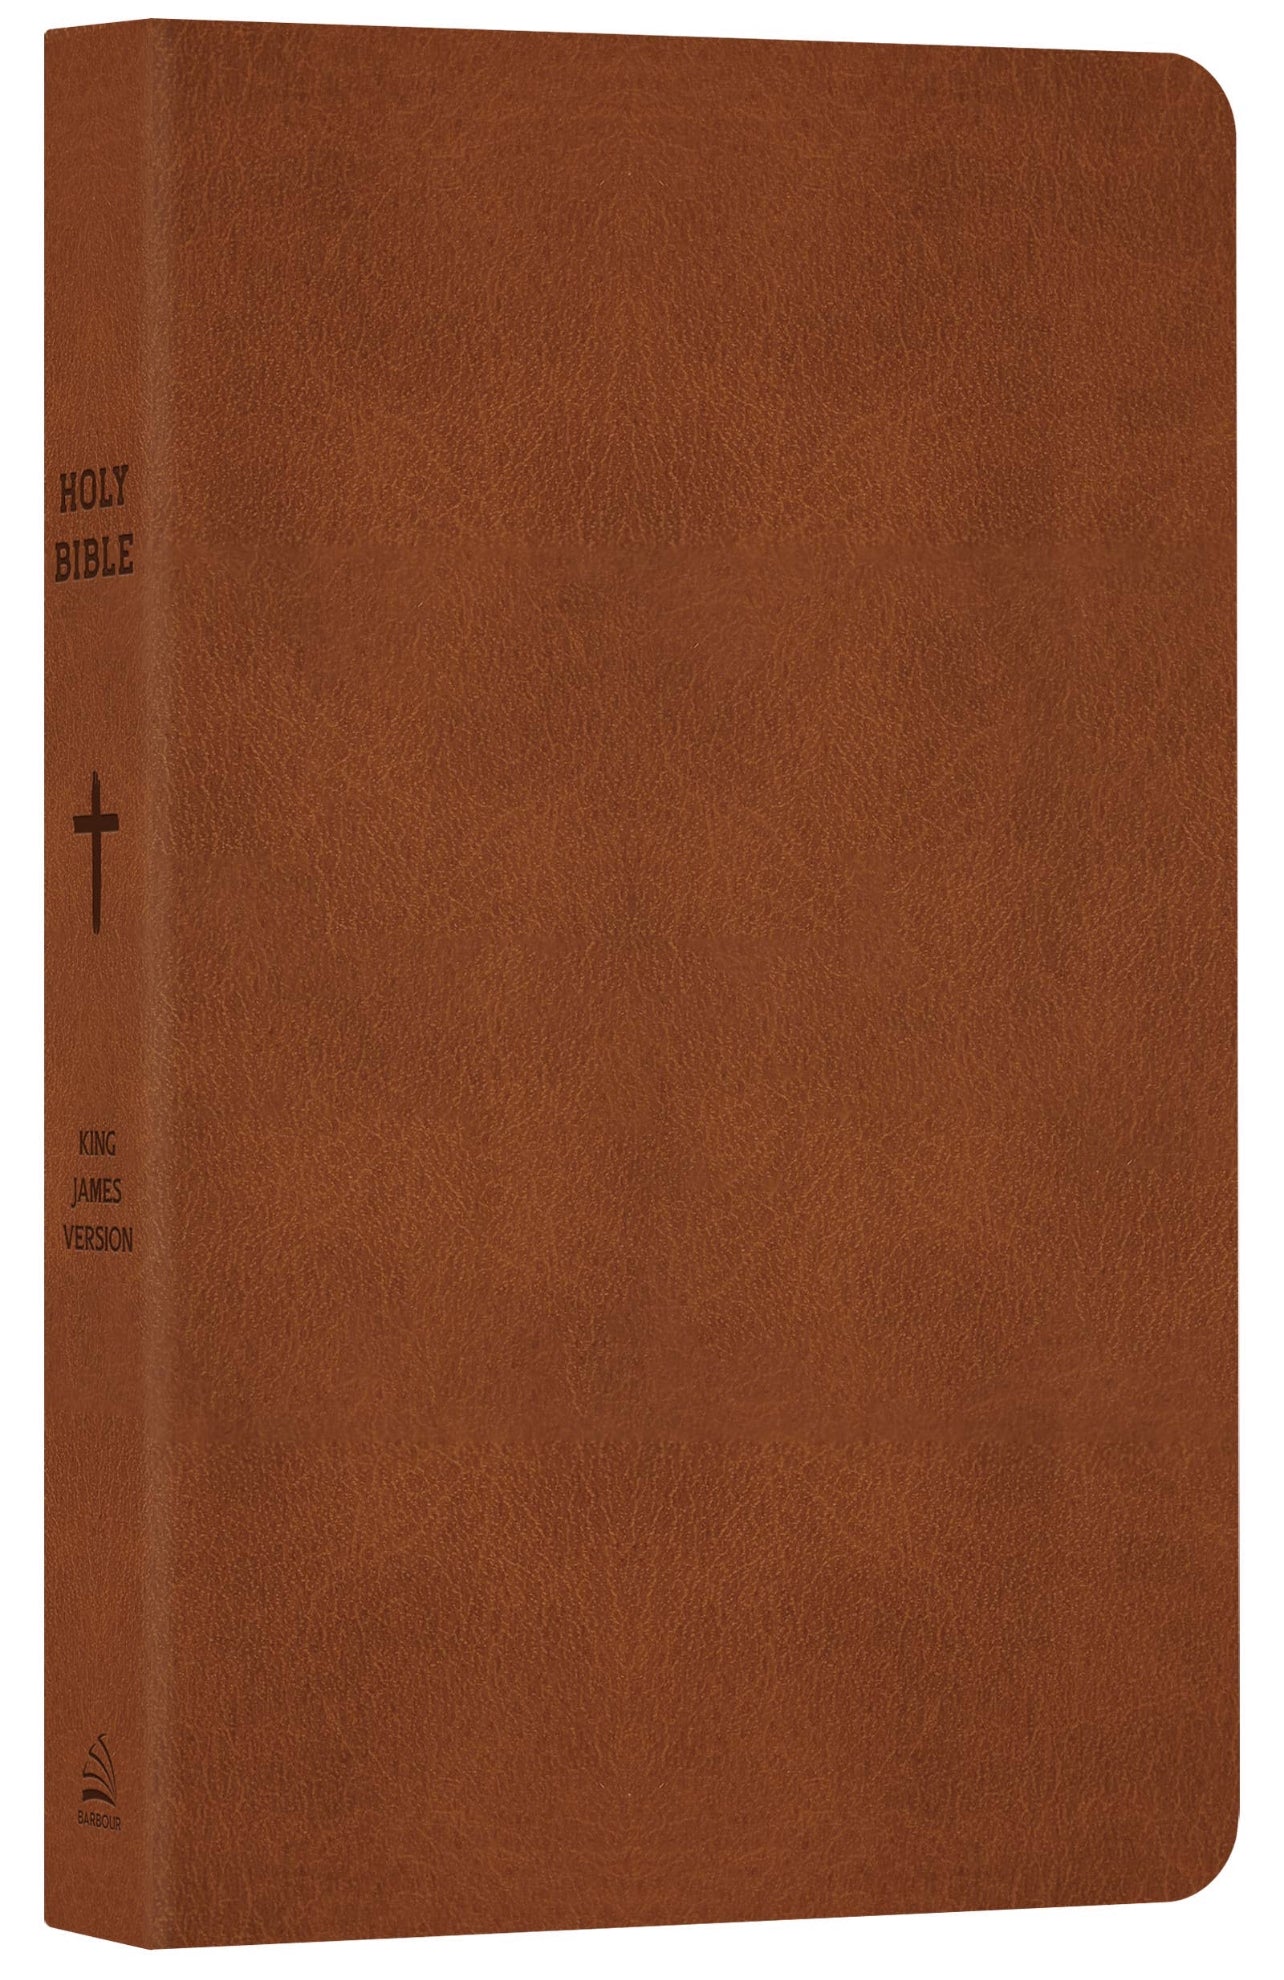 The Go-Anywhere KJV Bible for Young Men [Woodgrain Chestnut]